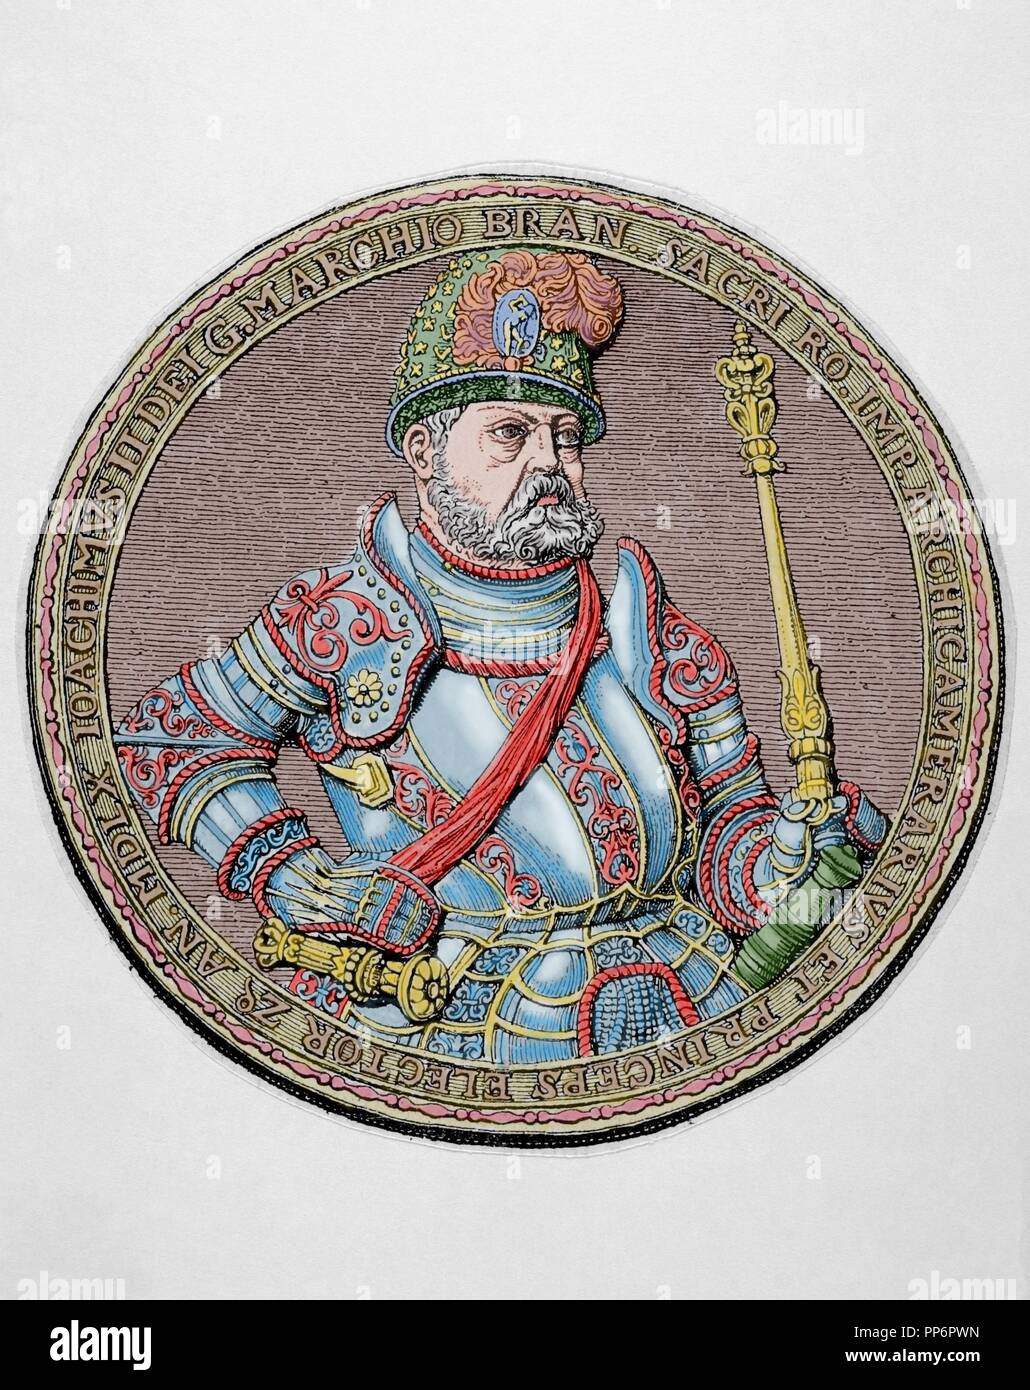 Joachim II Hector (1505-1571). L'électeur de Brandebourg. Membre de la maison de Hohenzollern. Gravure en couleur. Historia 'universel', 1882. Banque D'Images